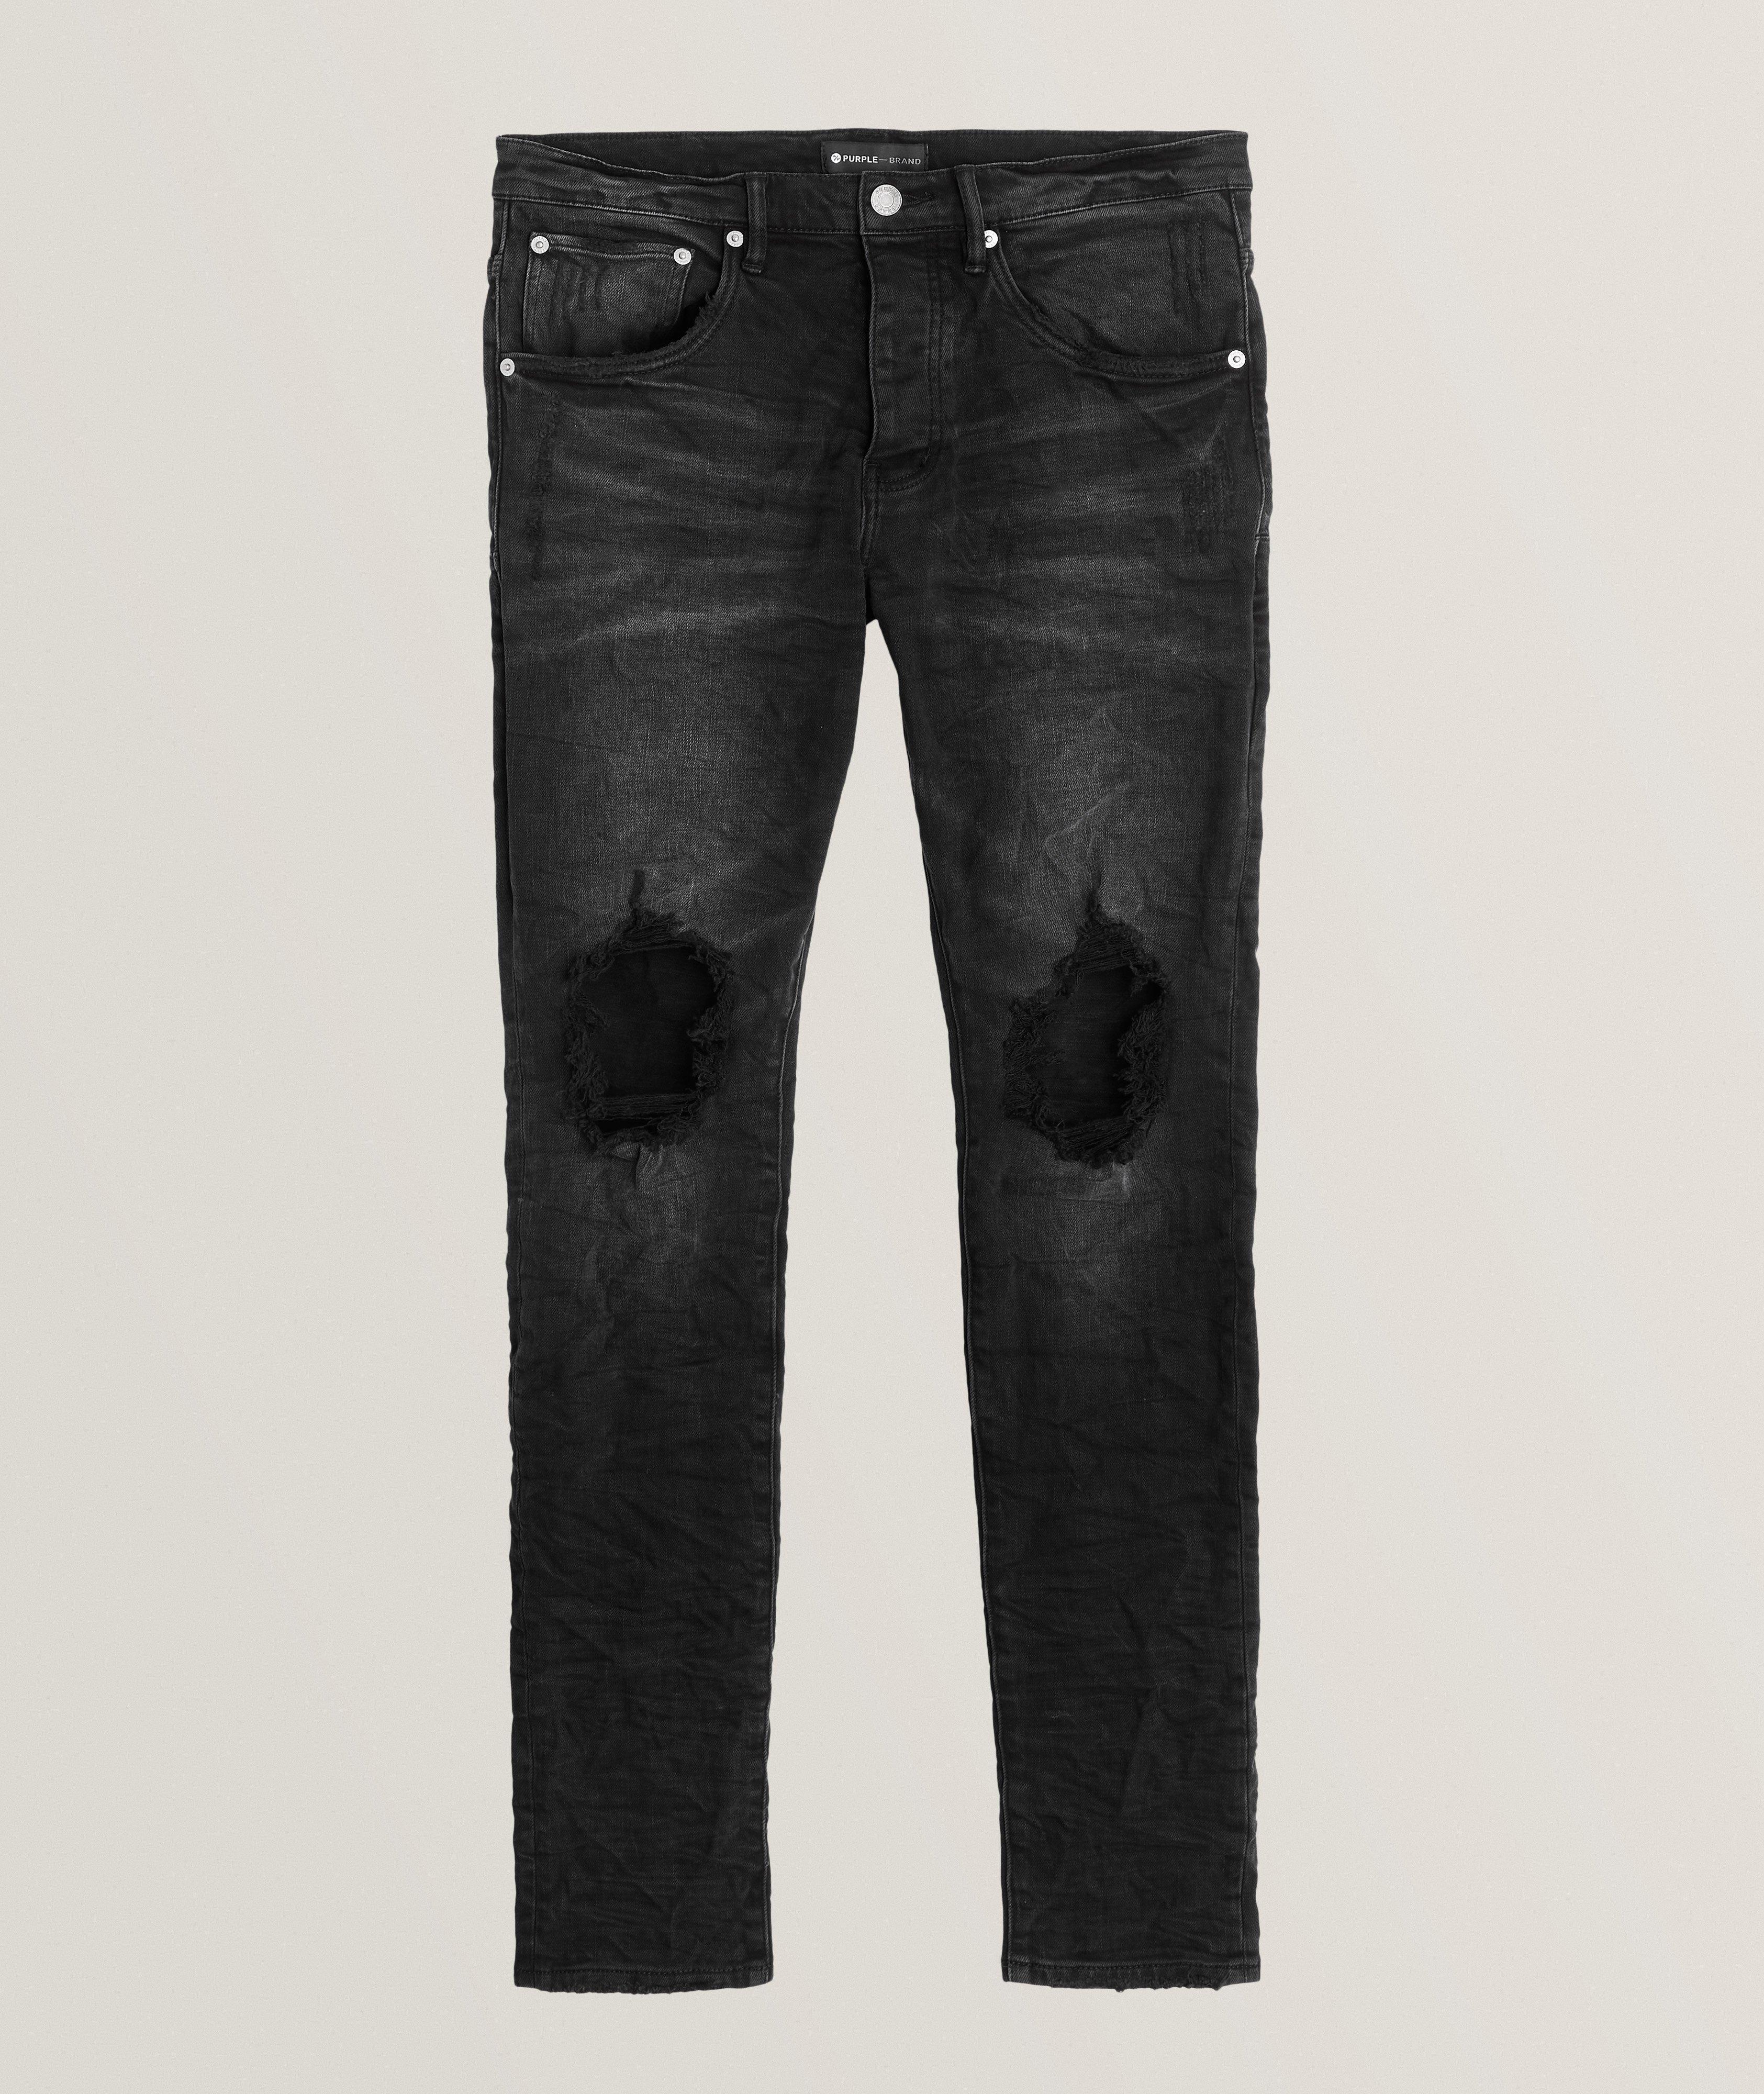 Purple Brand Slim Fit Vintage Distressed Jeans in Vintage Black